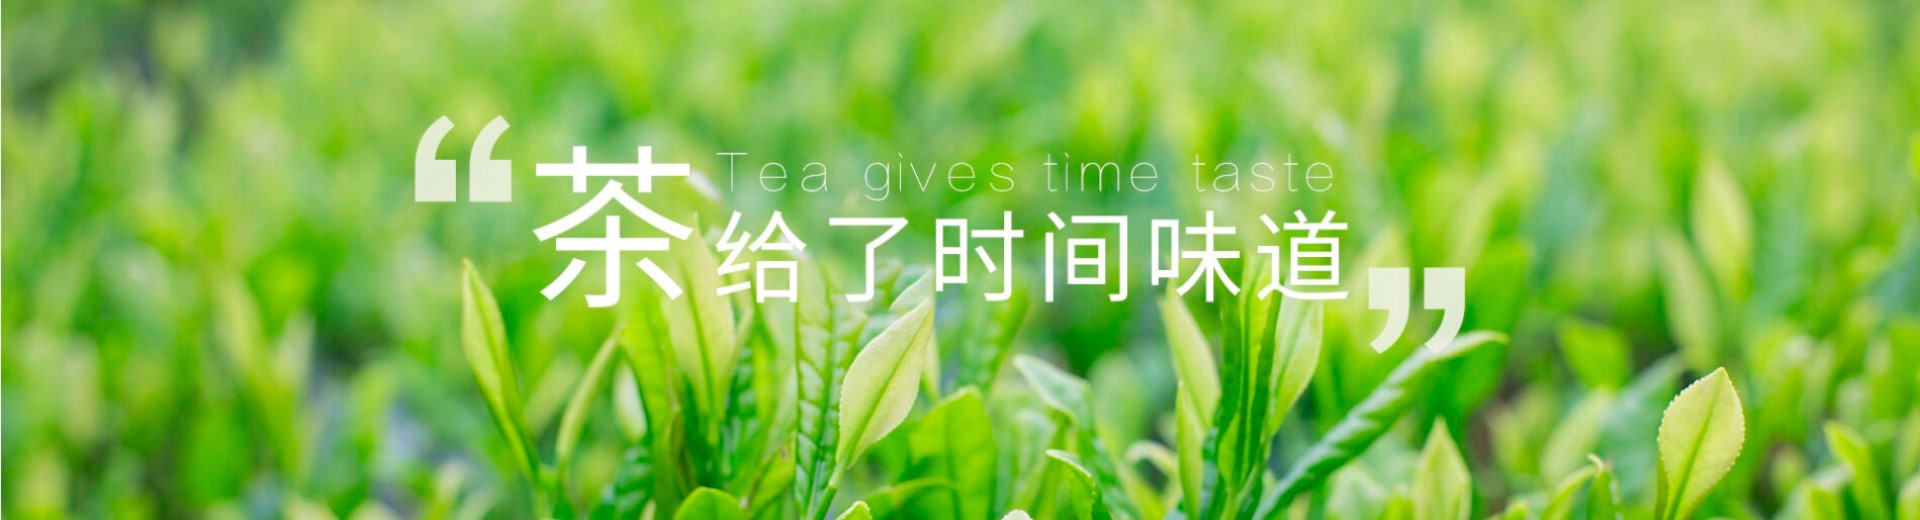 茶叶公司响应式网页网站建设案例